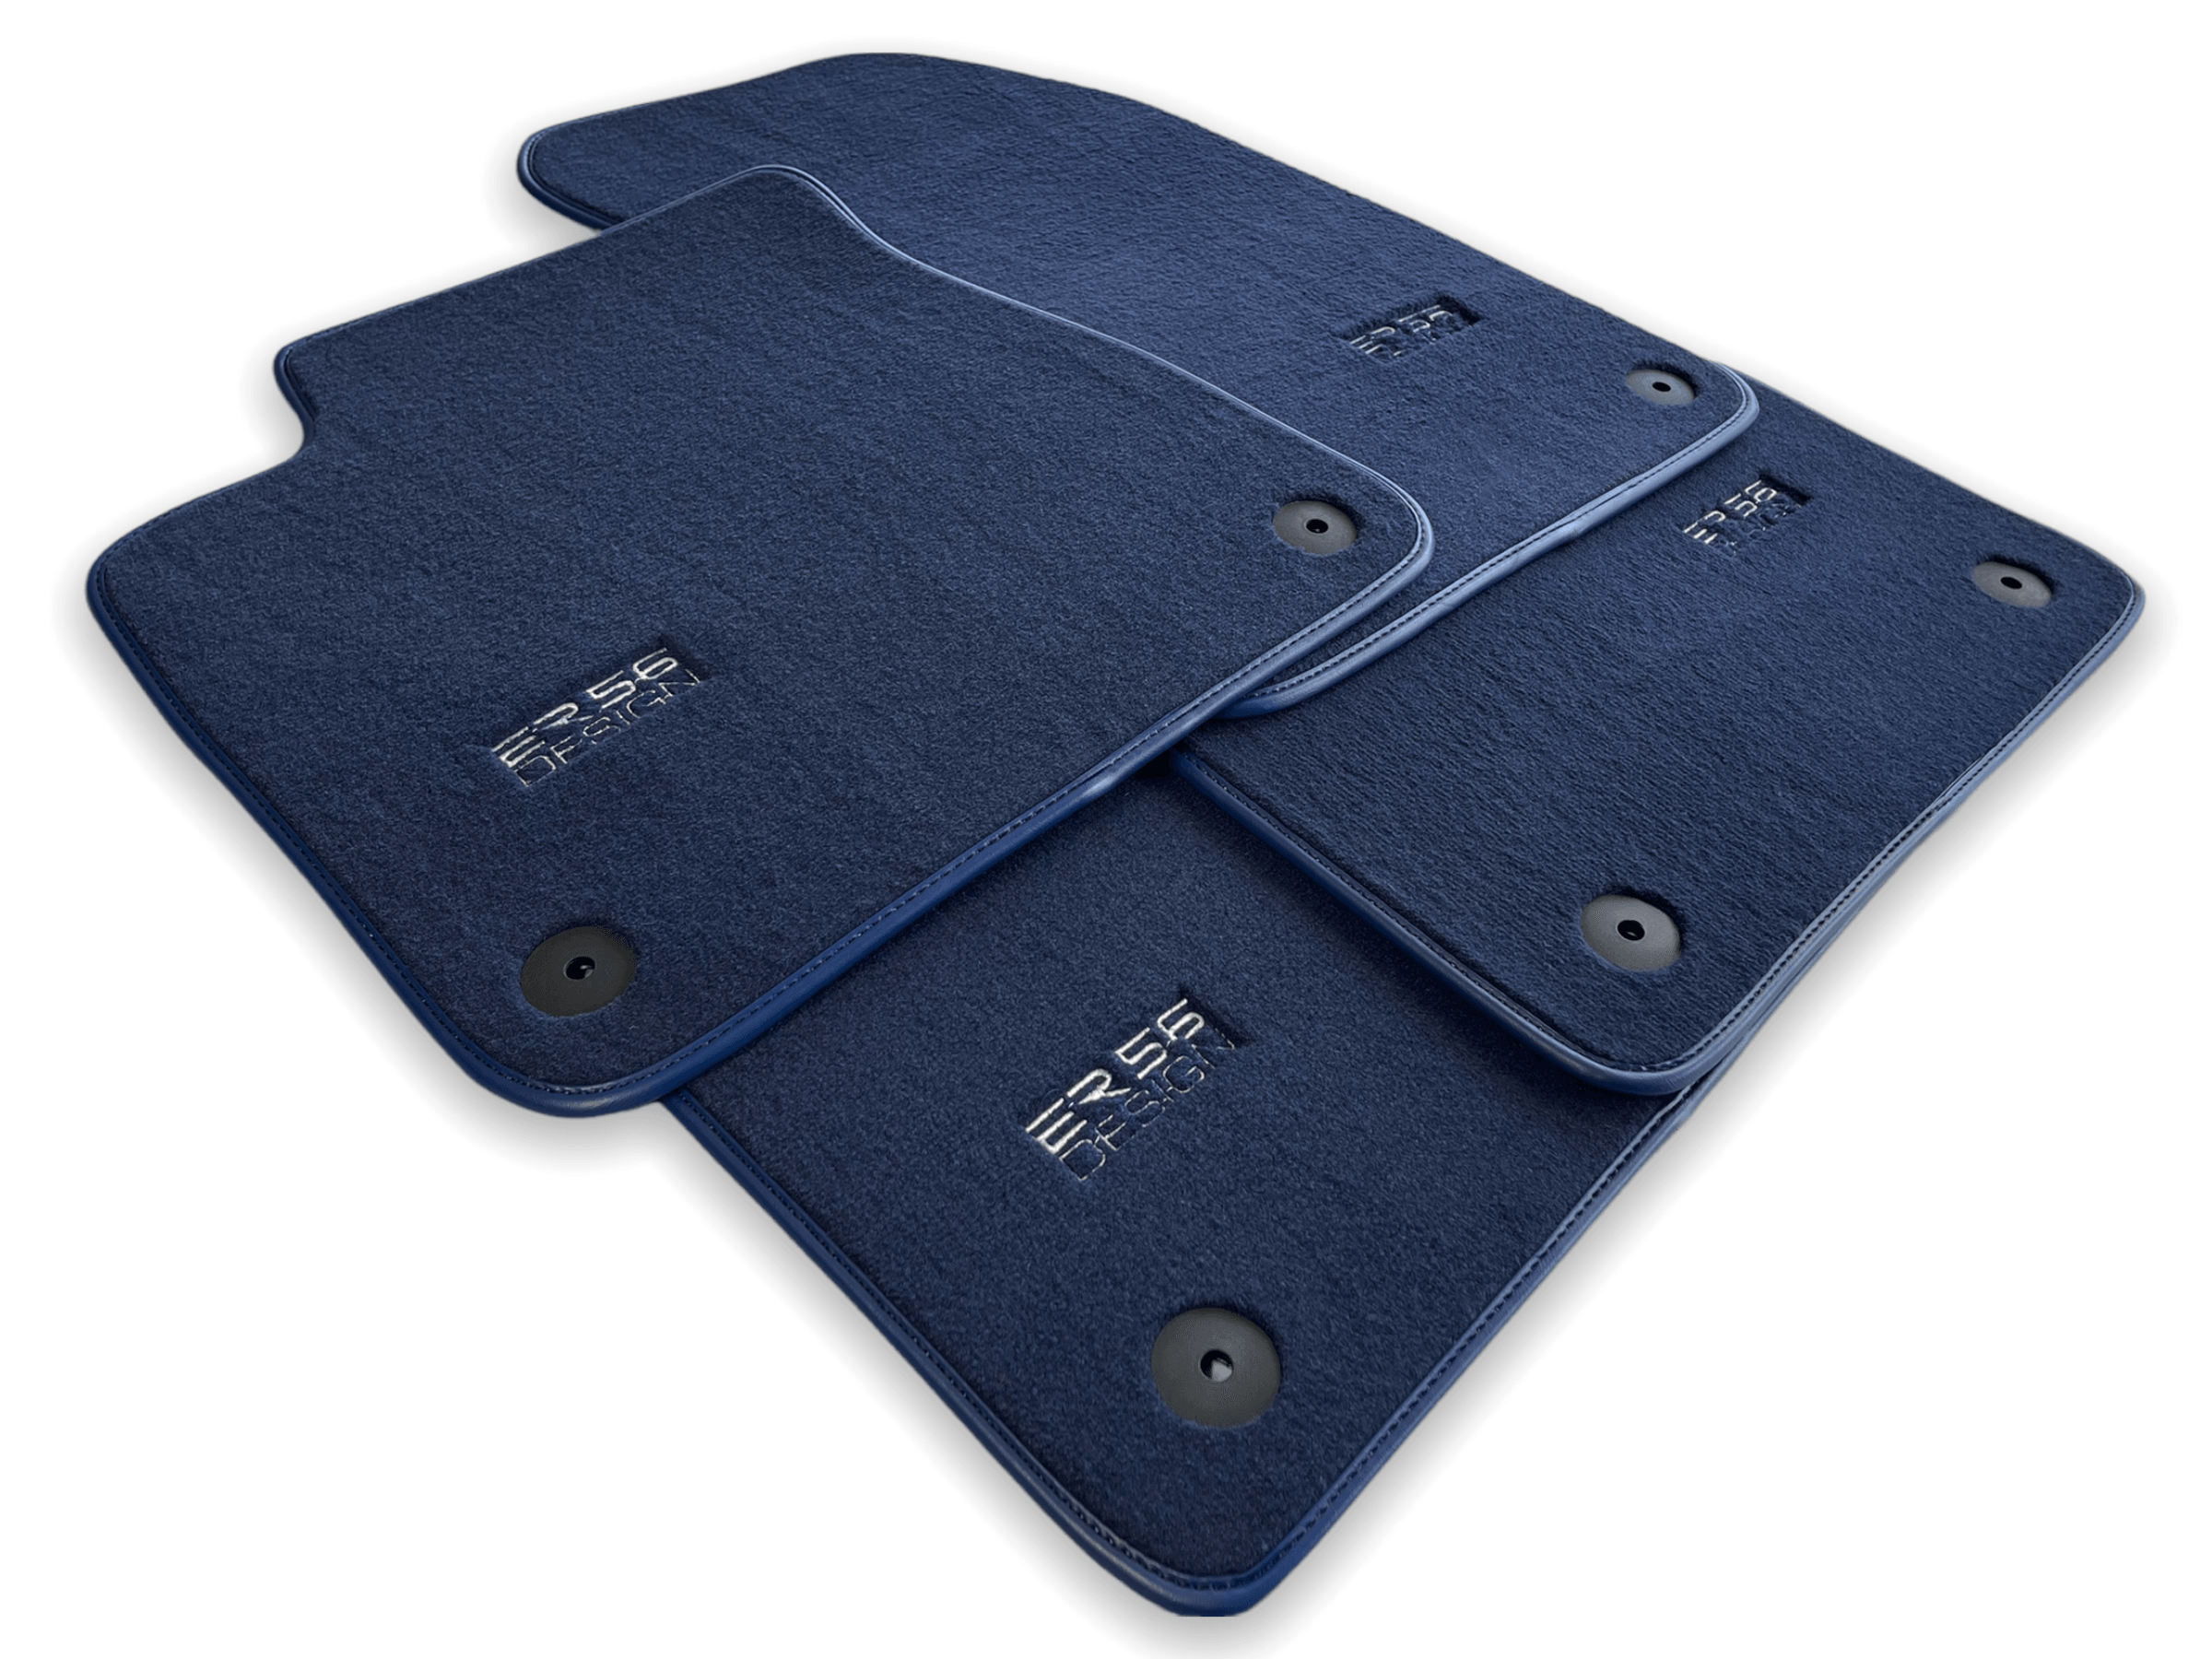 Dark Blue Floor Mats for Audi Q2 (2016-2020) | ER56 Design